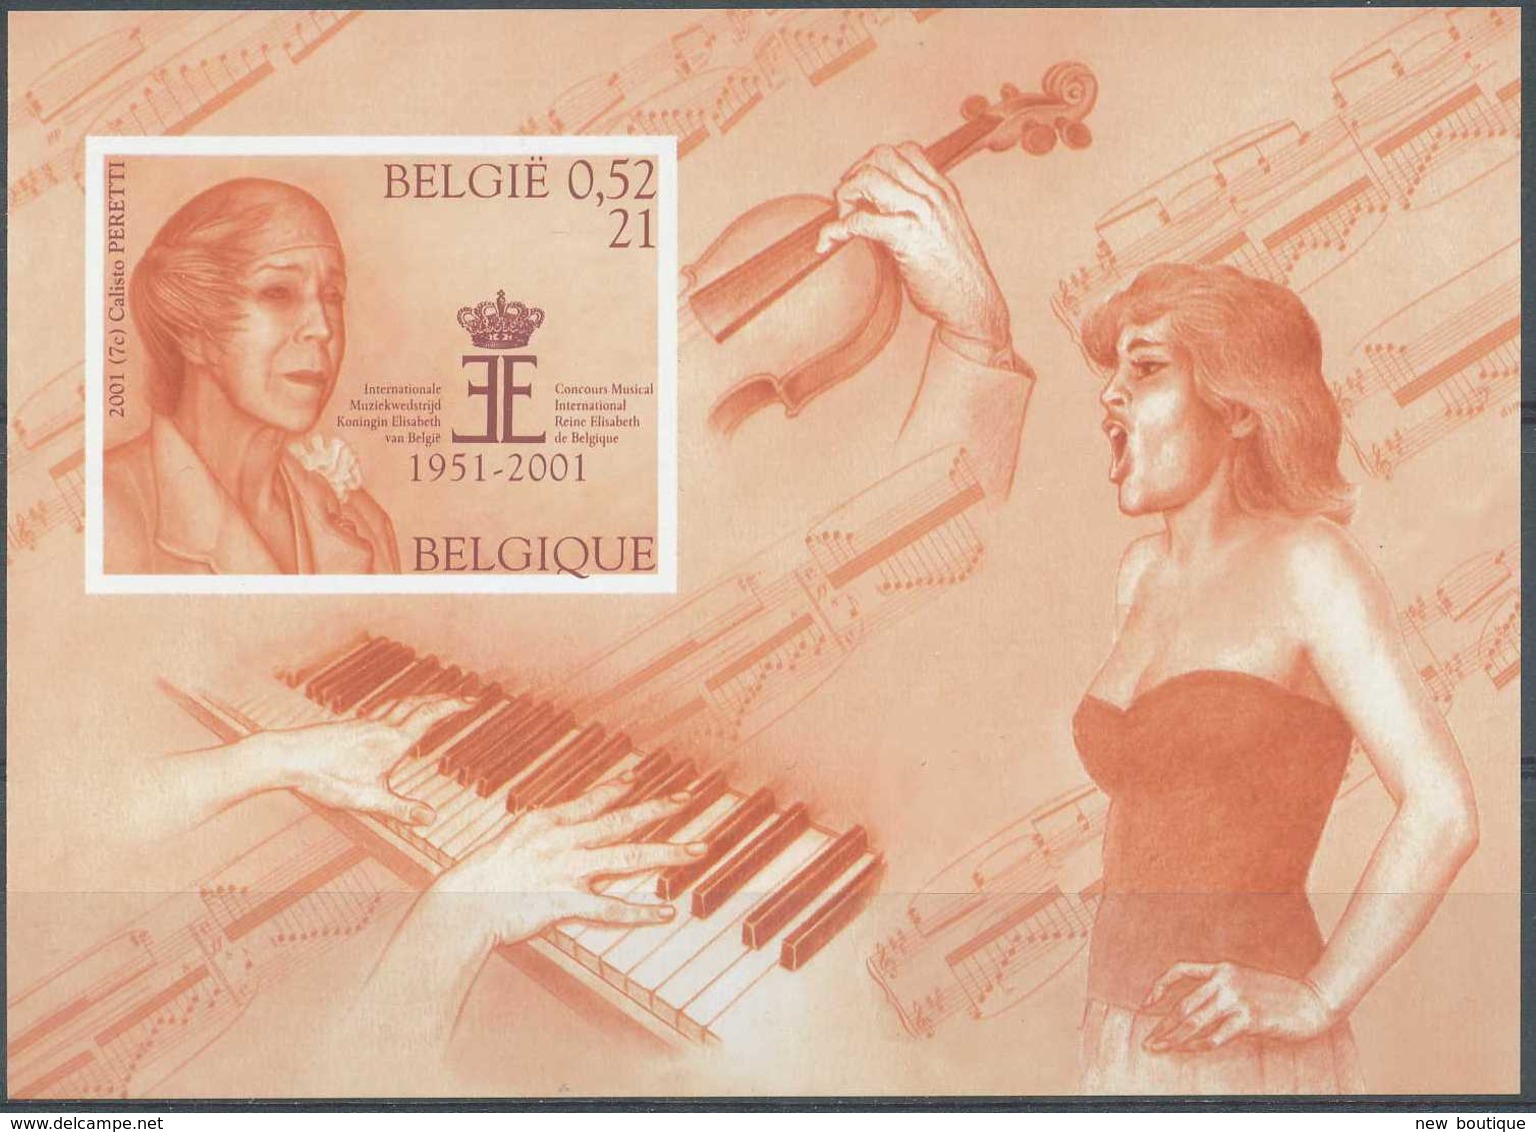 NB - [106850]TB//ND/Imperf-c:50e-Belgique 2001, BL90, Musique, Clavier De Piano, Violon Et Partition, ND/Imperf - Music